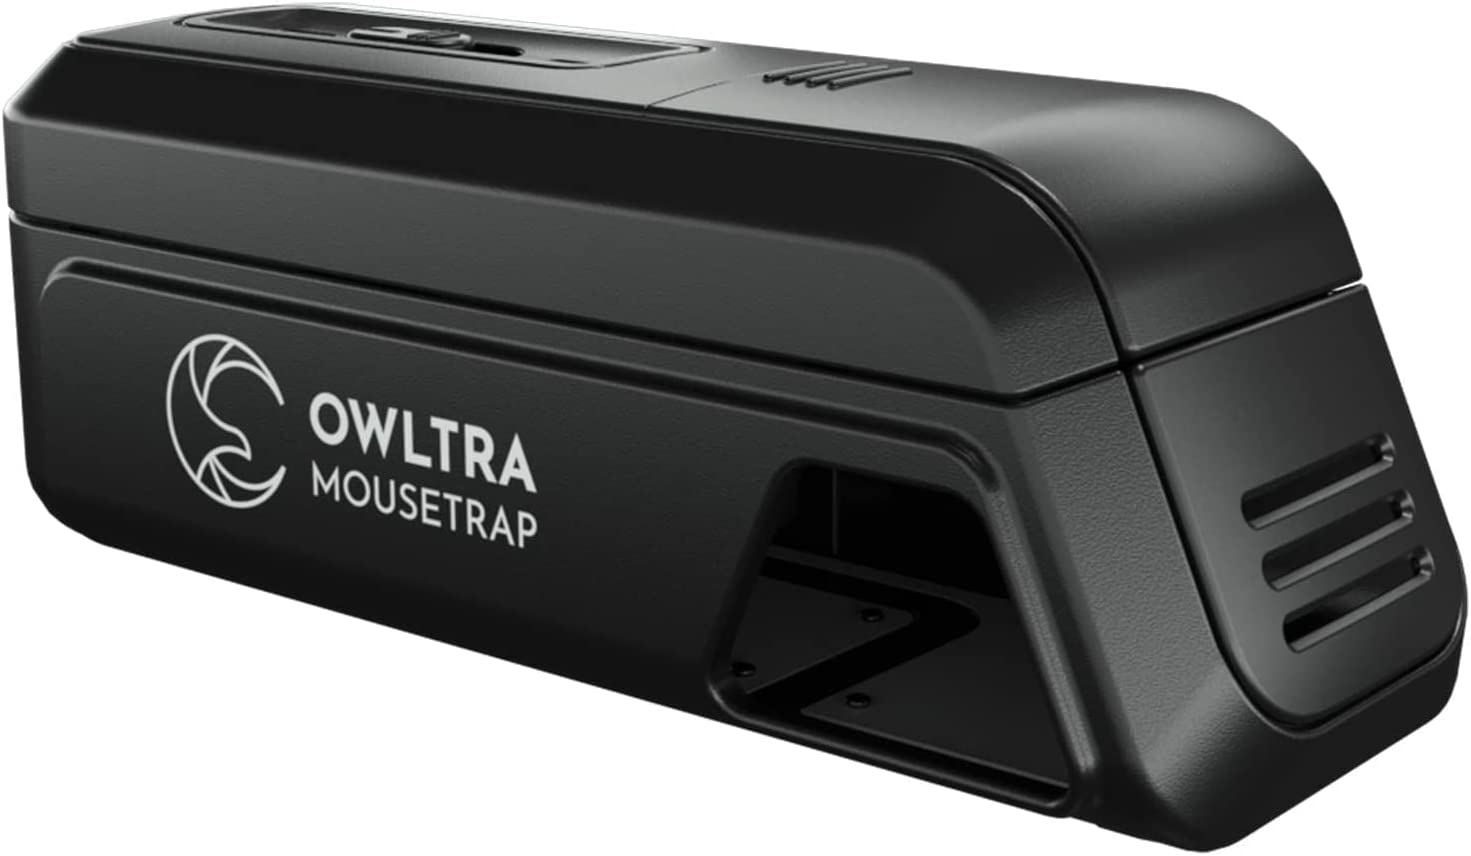 OWLTRA Mousetrap